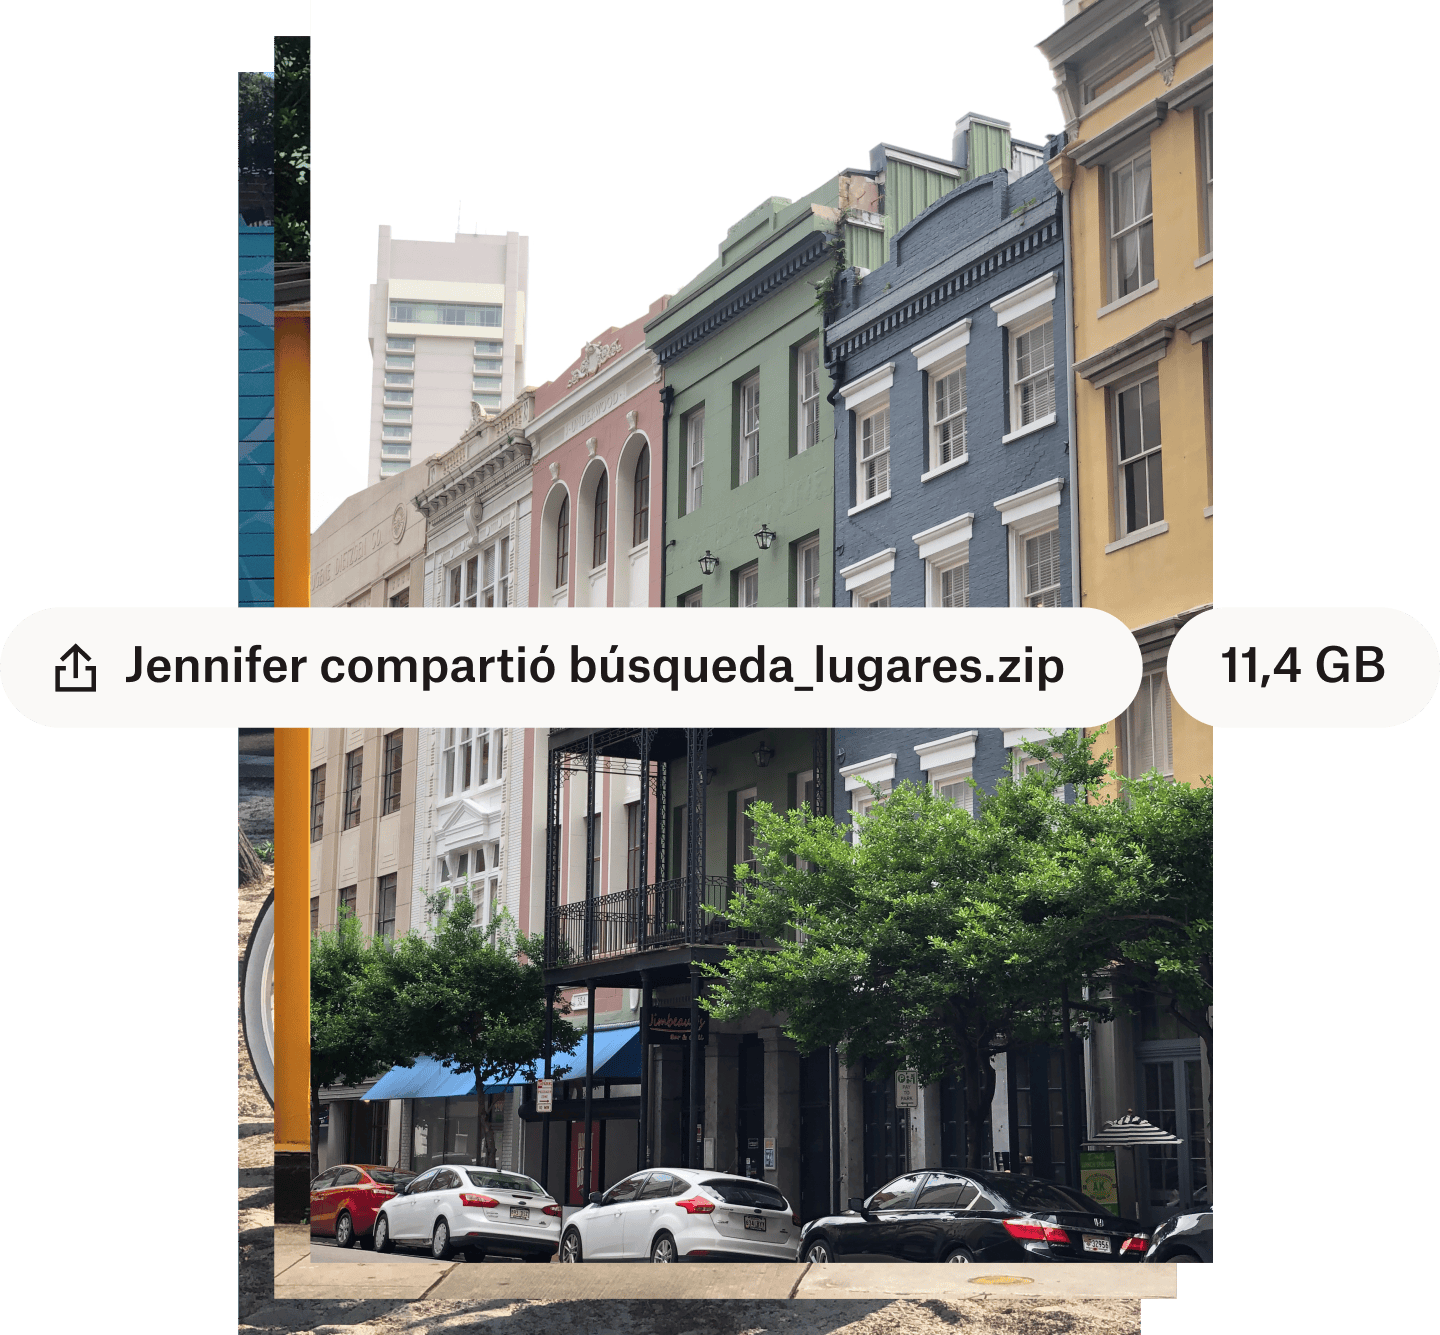 Foto de una calle de la ciudad con edificios de colores con el nombre y el tamaño del archivo superpuestos en burbujas de texto blancas